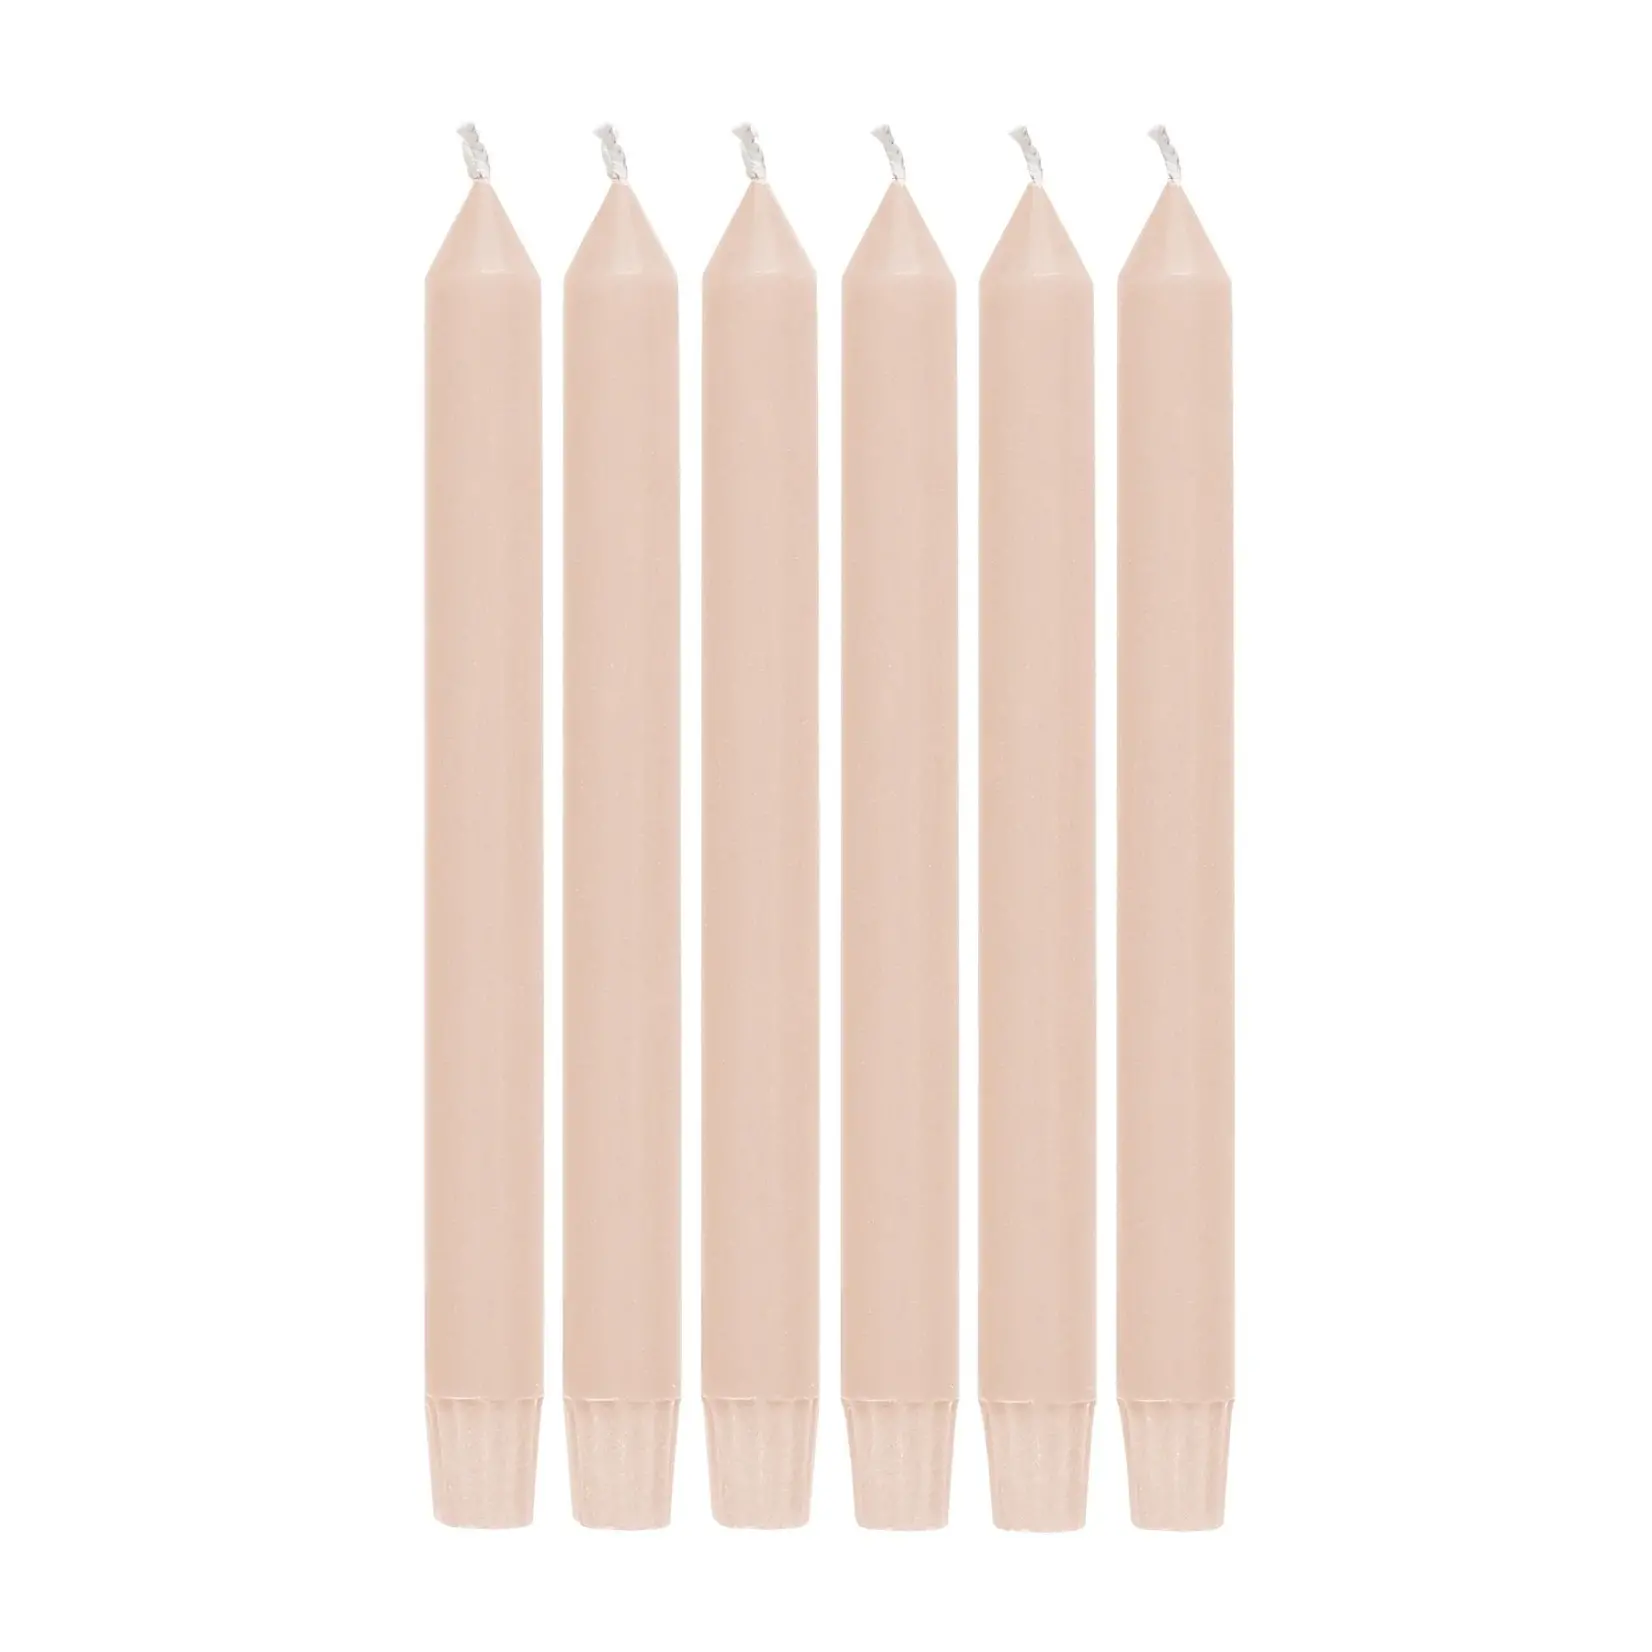 Return to Sender Lange roze stearine dinerkaarsen - 23 cm × 4- 23 cm × 4 cm, pak van 6 stuks